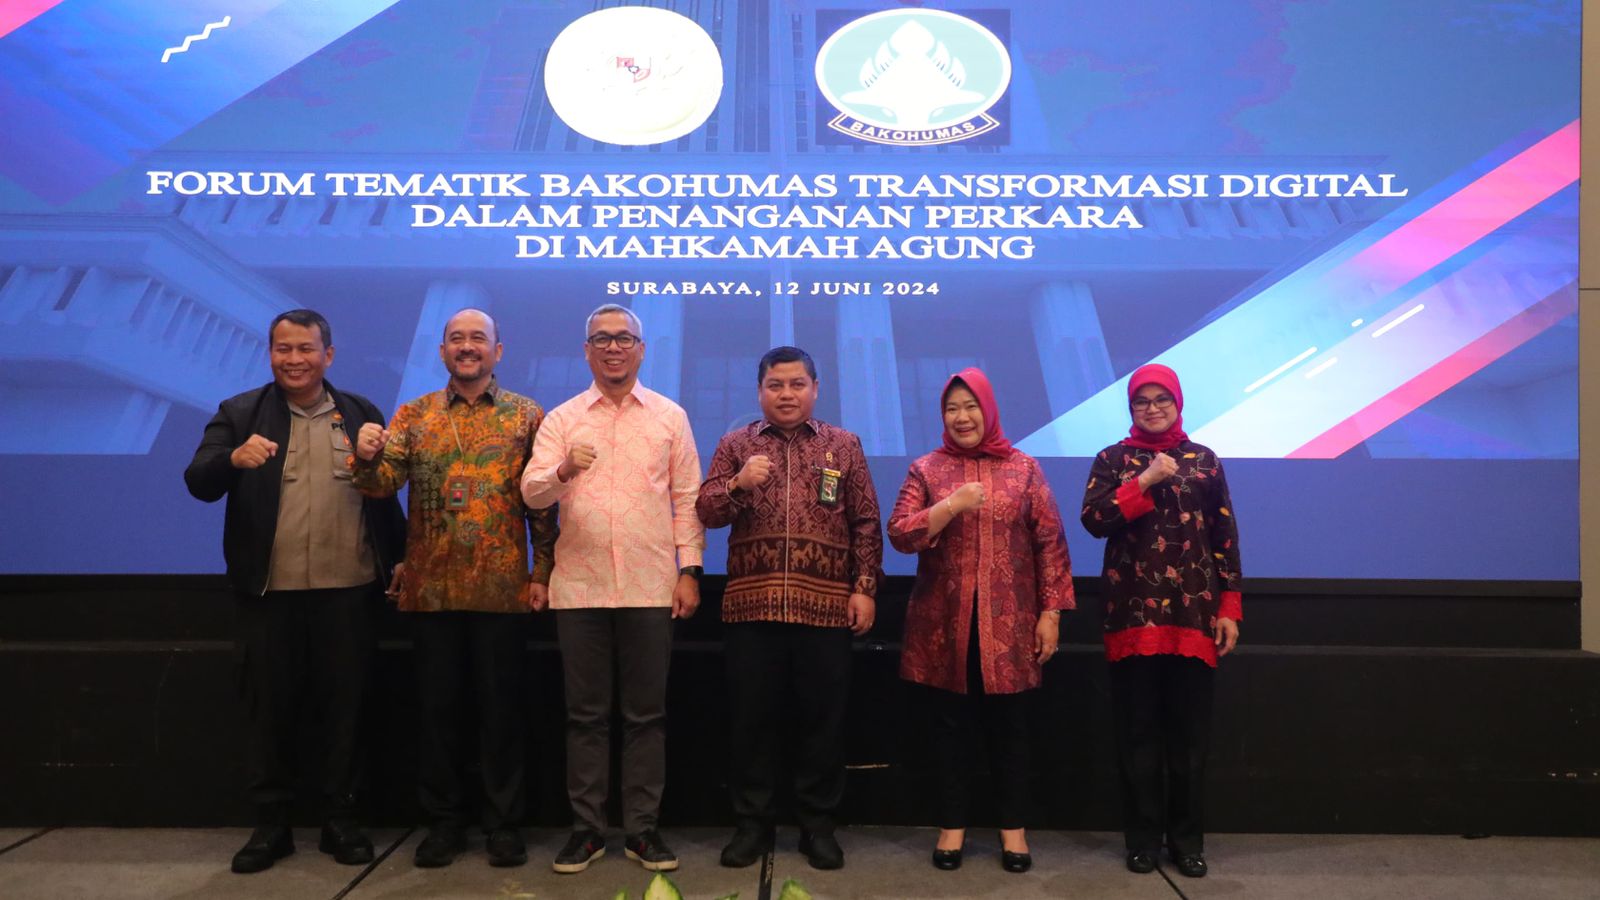 Kemenpora Hadiri Forum Tematik Bakohumas Transformasi Digital Dalam Penanganan Perkara MA di Surabaya